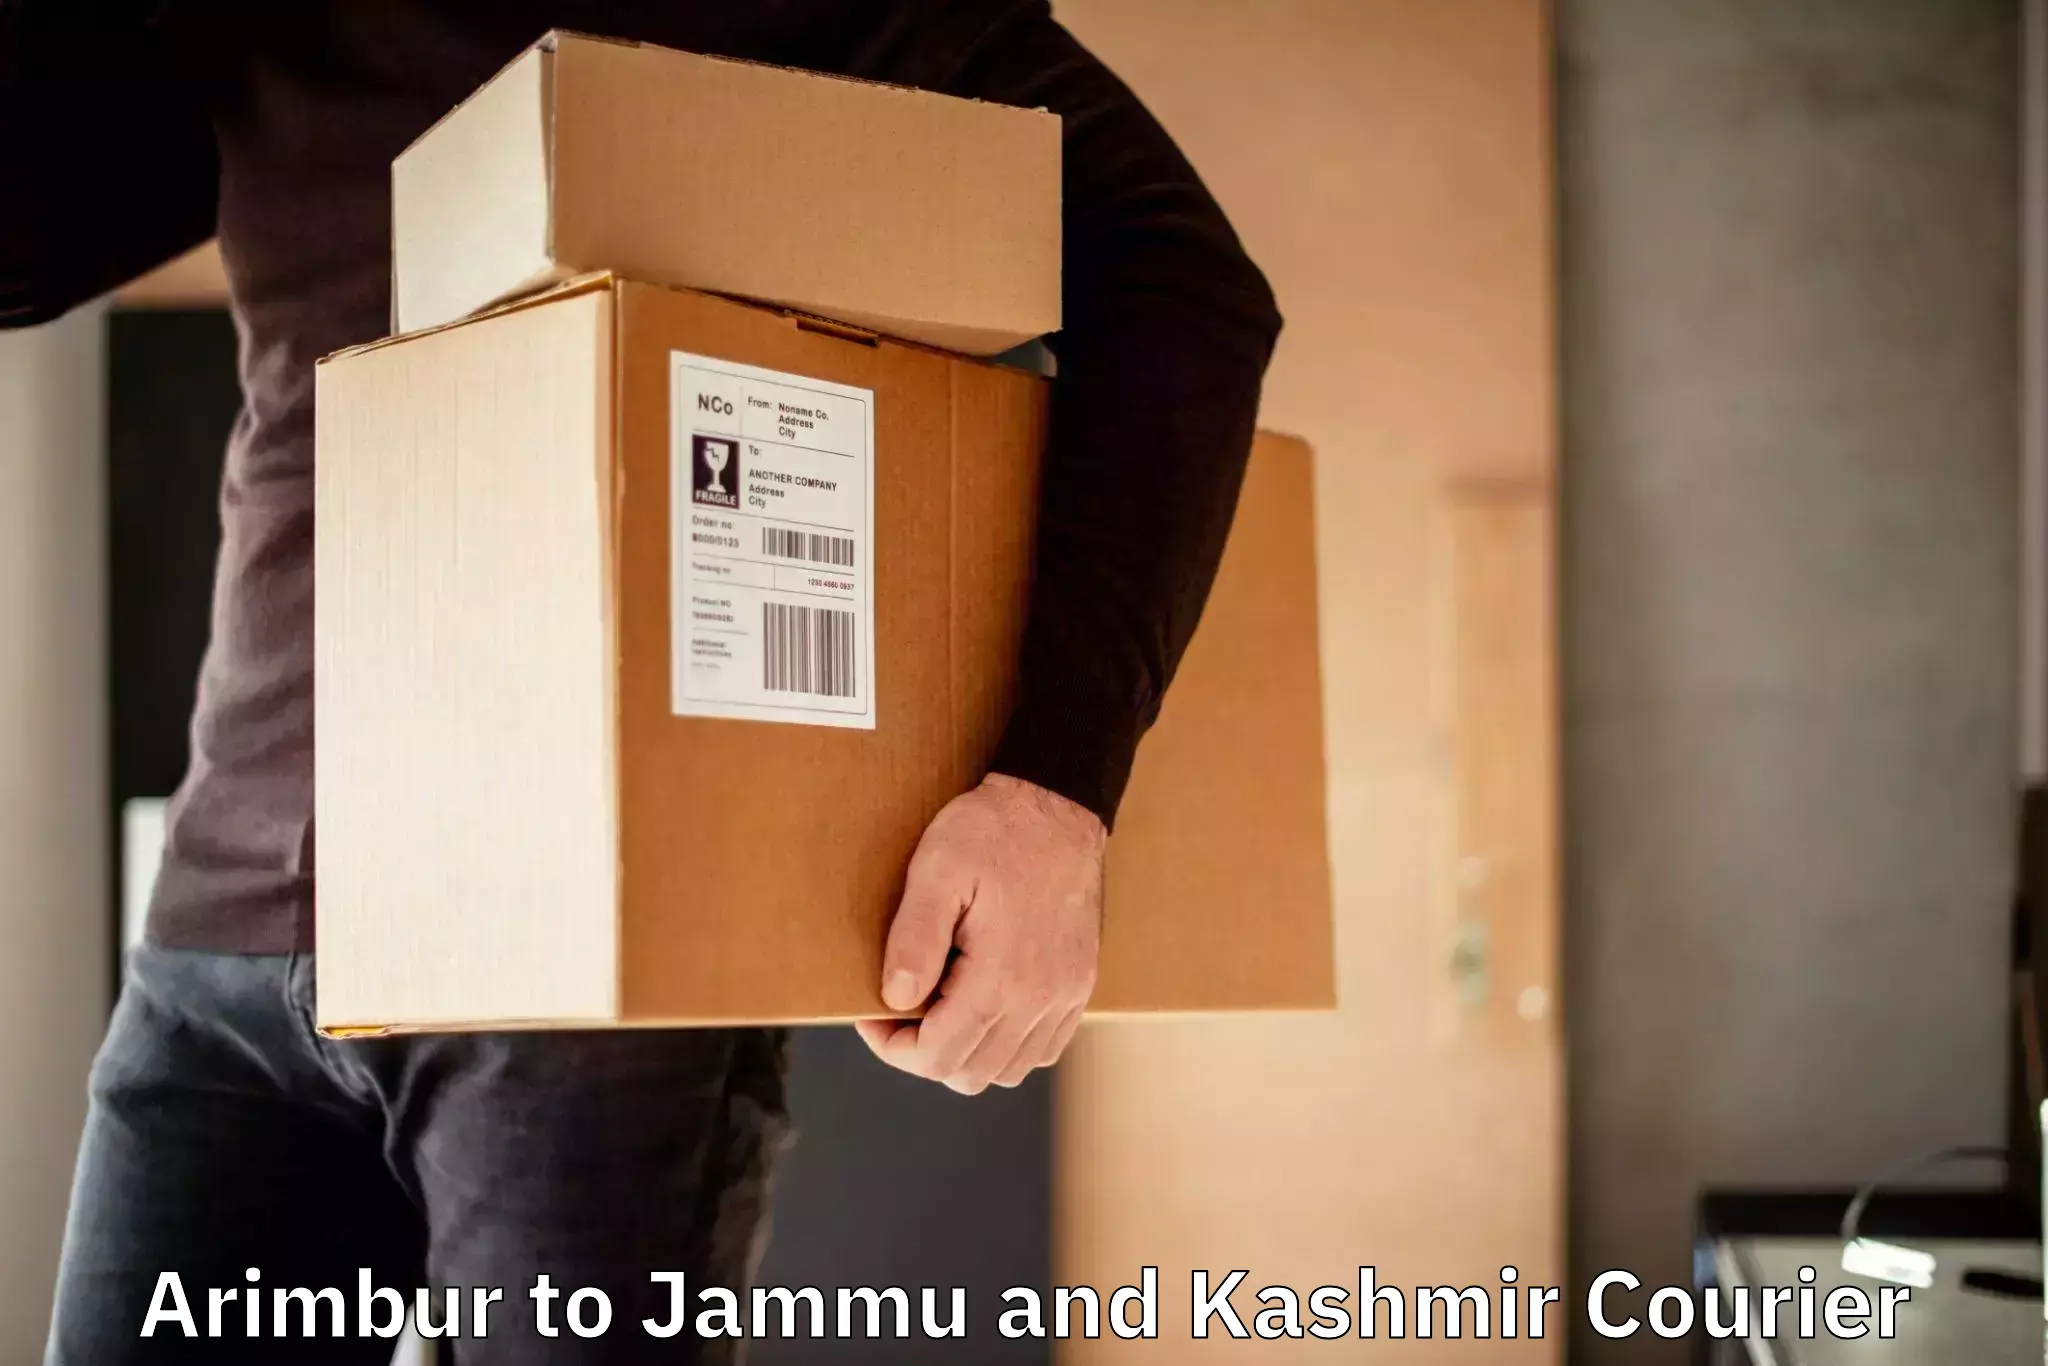 Nationwide courier service Arimbur to Jammu and Kashmir